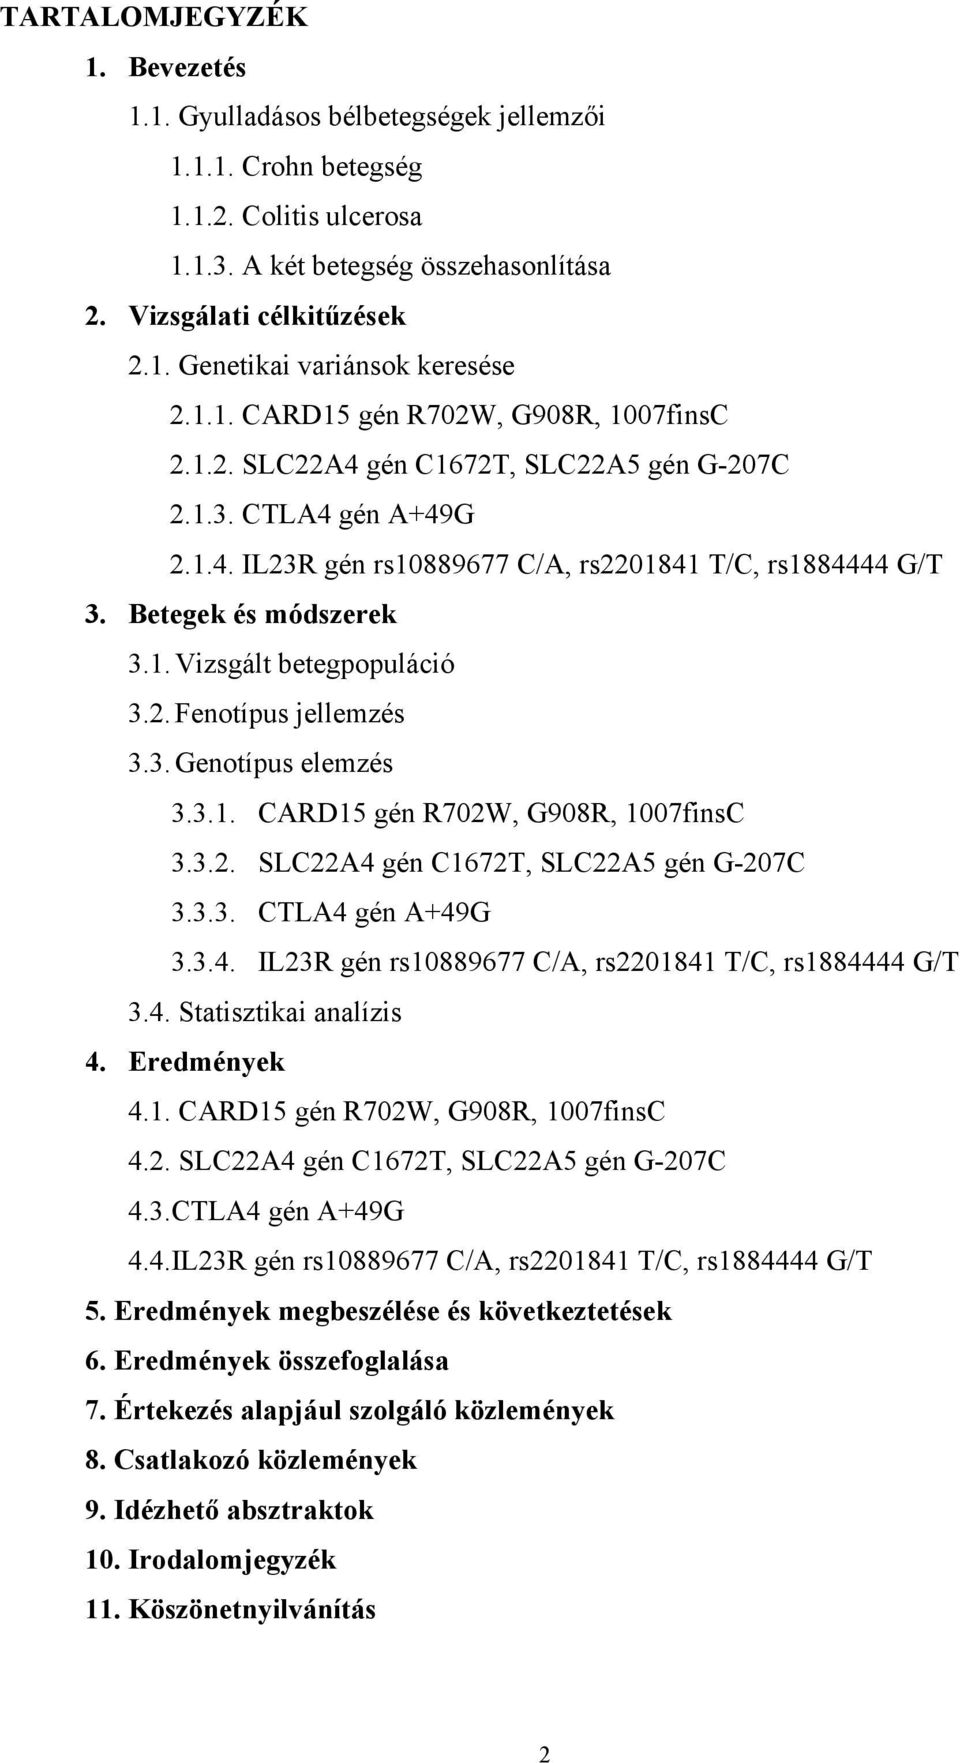 2. Fenotípus jellemzés 3.3. Genotípus elemzés 3.3.1. CARD15 gén R702W, G908R, 1007finsC 3.3.2. SLC22A4 gén C1672T, SLC22A5 gén G-207C 3.3.3. CTLA4 gén A+49G 3.3.4. IL23R gén rs10889677 C/A, rs2201841 T/C, rs1884444 G/T 3.